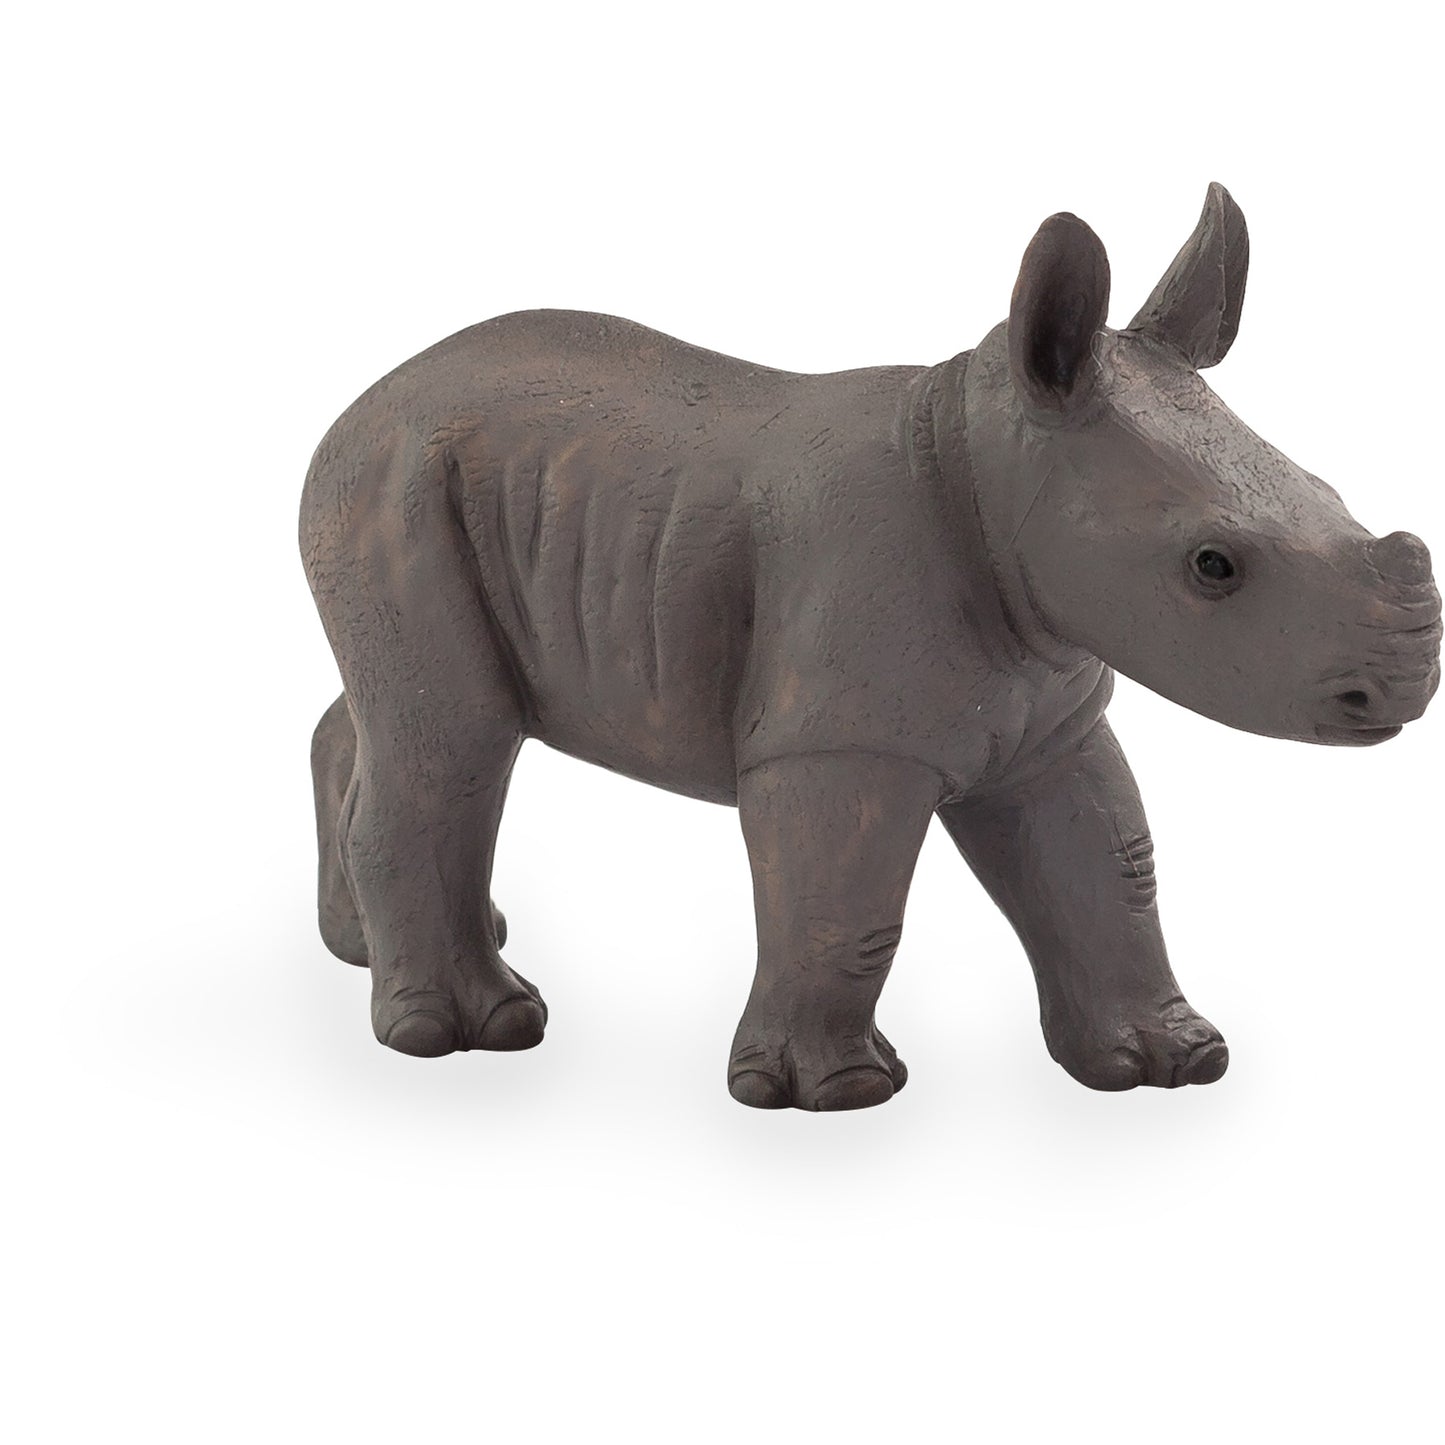 Rhino Baby